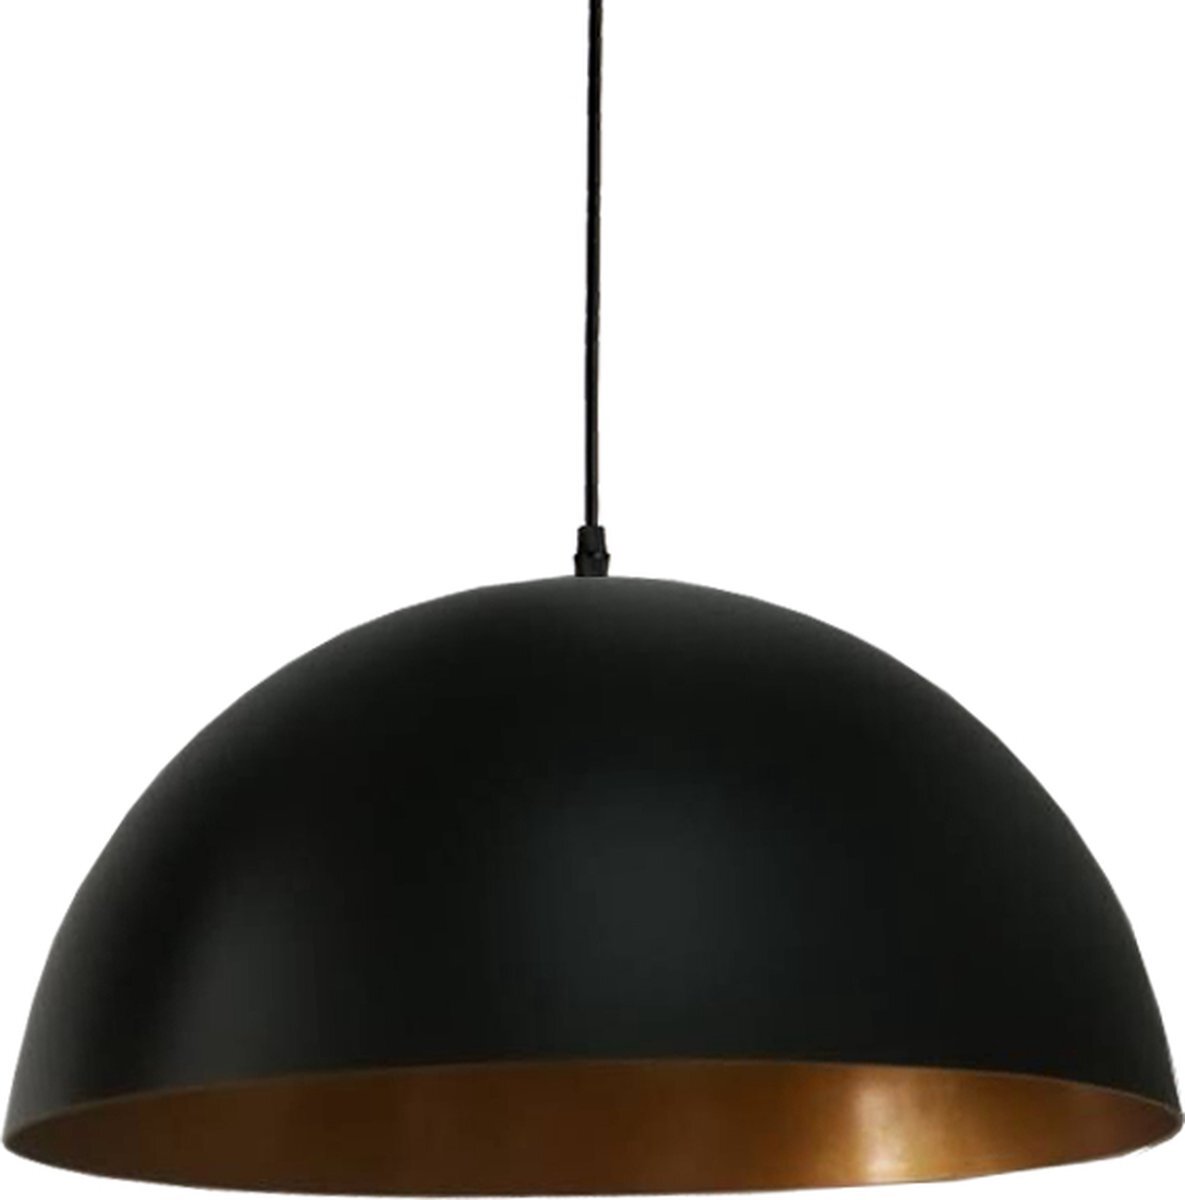 Homestyle Pro Zwarte hanglamp met reliëf – kamerlamp – Plafondlamp – Keukenlamp – Ø35 cm – Zwart – Metaal – Halfrond – Industrieel – in lengte verstelbaar – E27 – 240V – zonder lichtbron